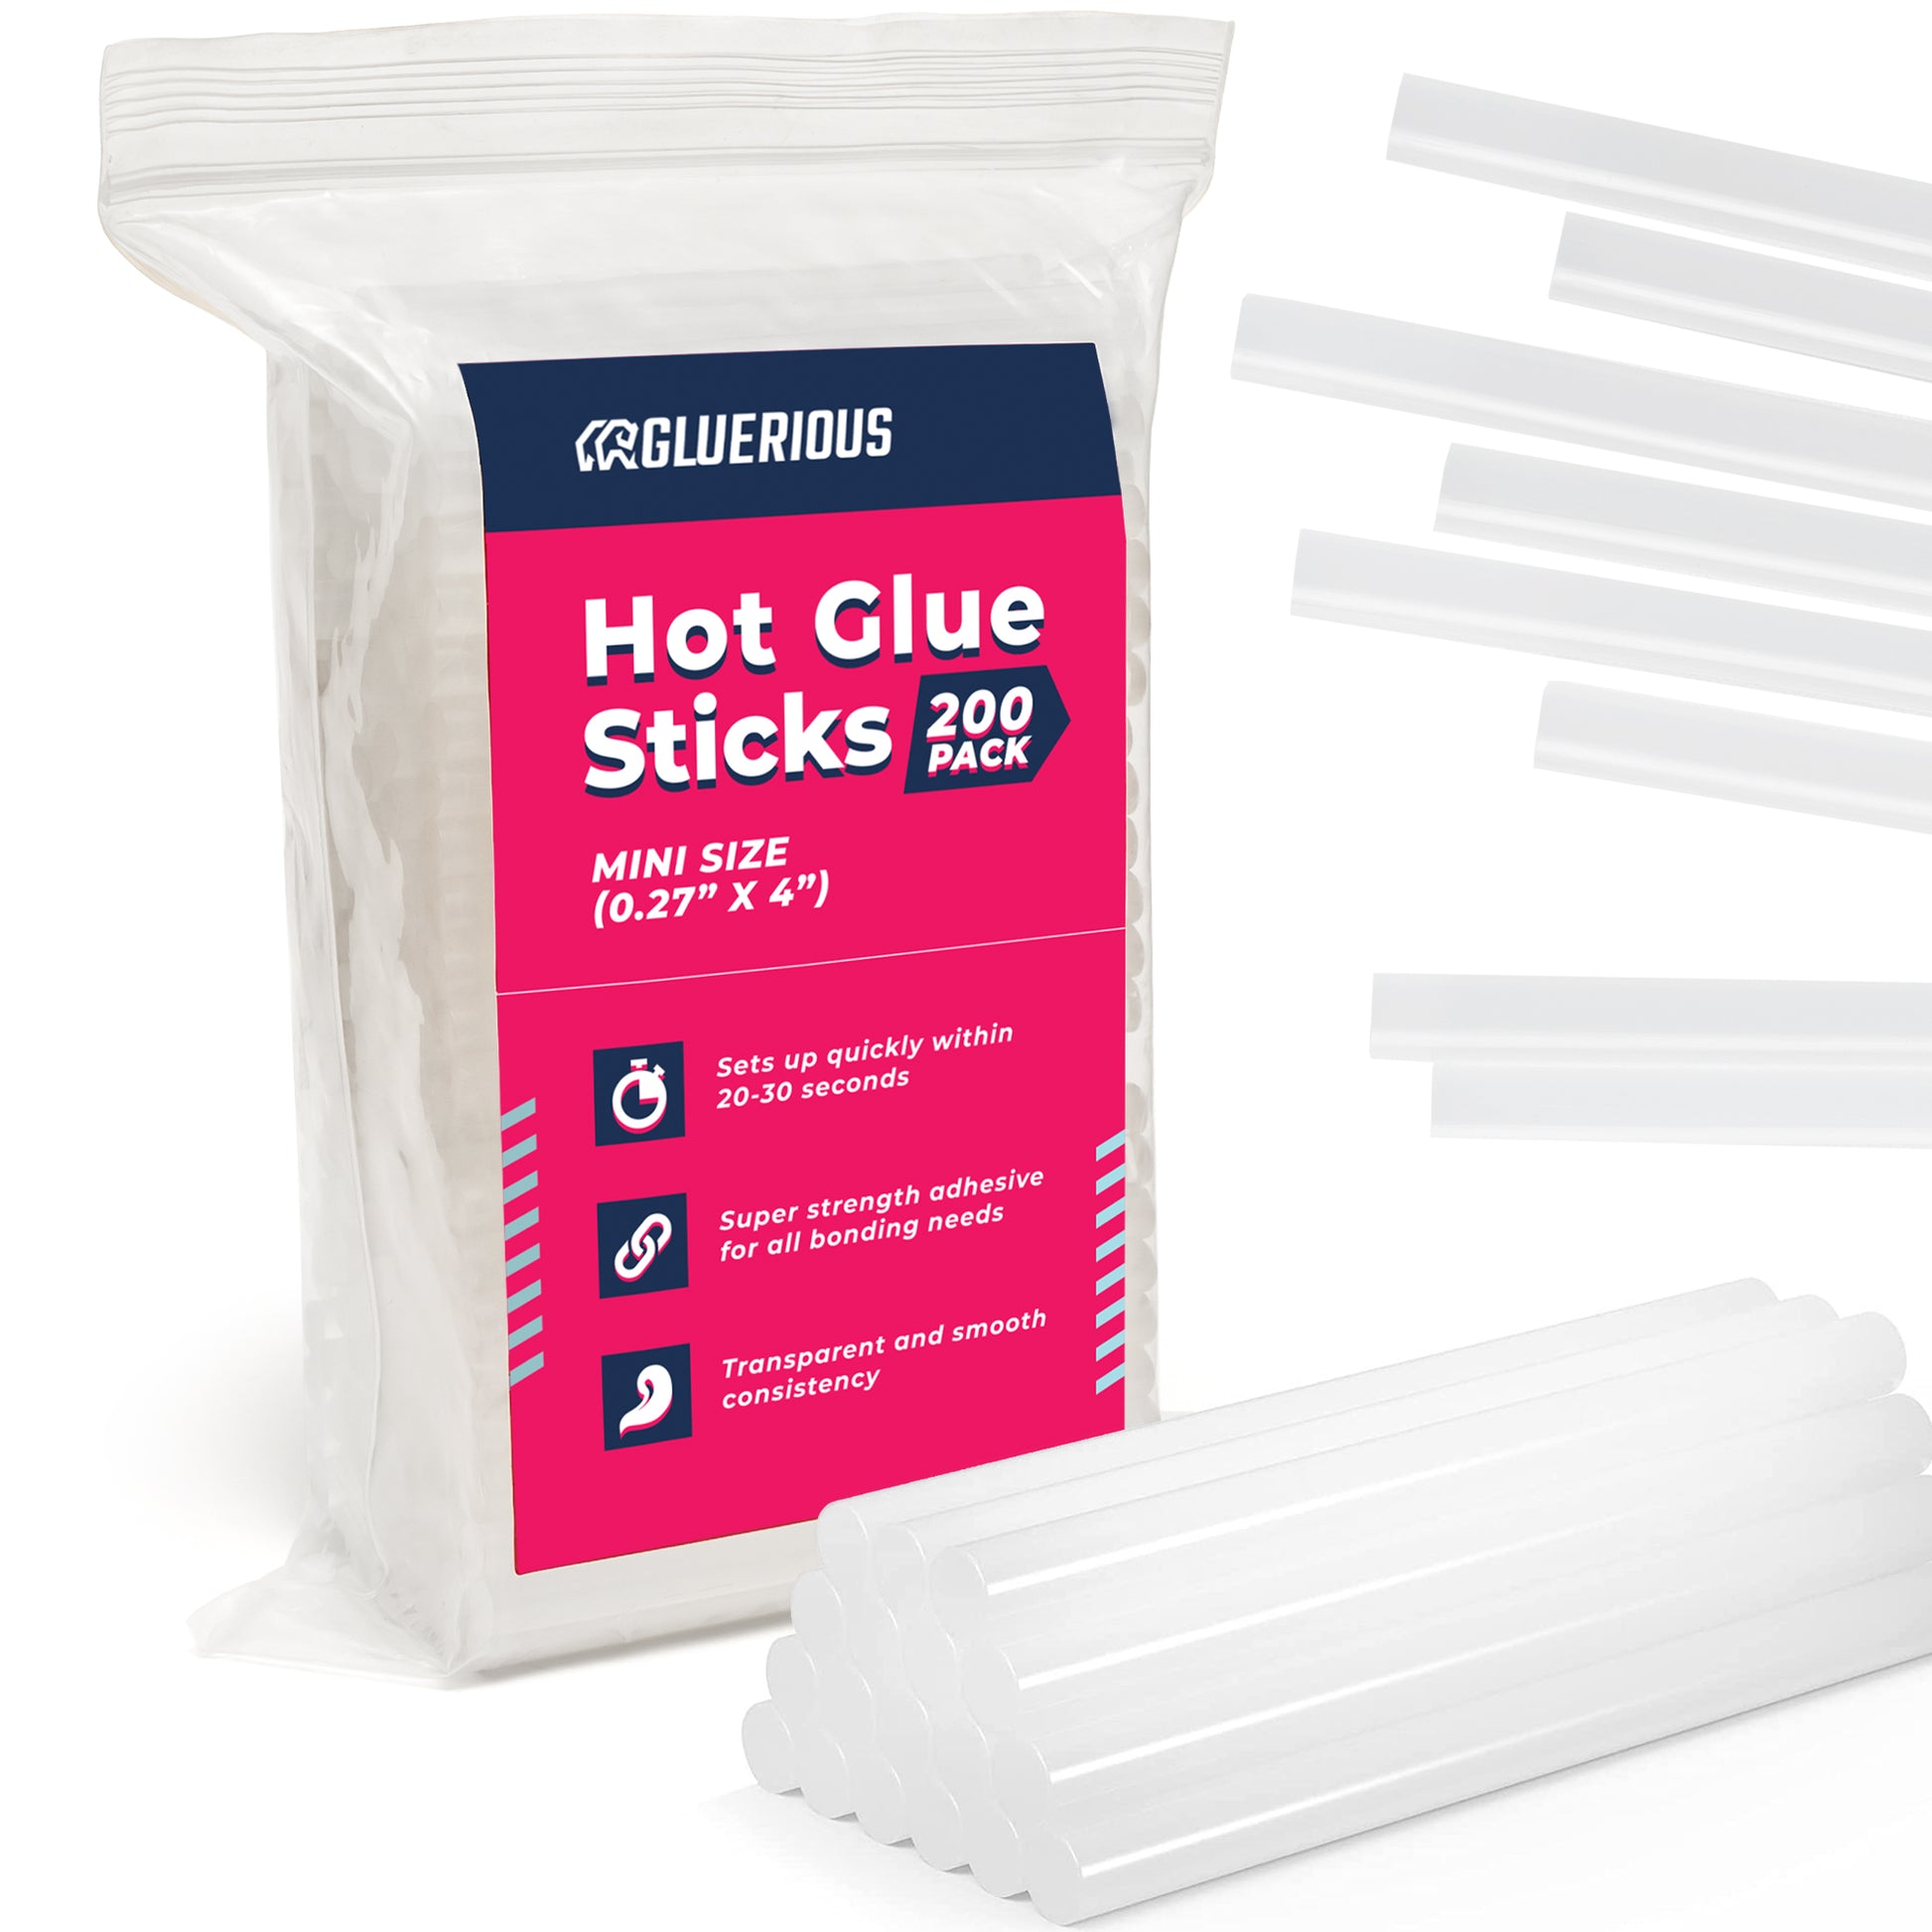 Glue Gun Mini Hot Glue Gun Kit With 20 Glue Sticks Hot Glue Guns For Crafts  Scho